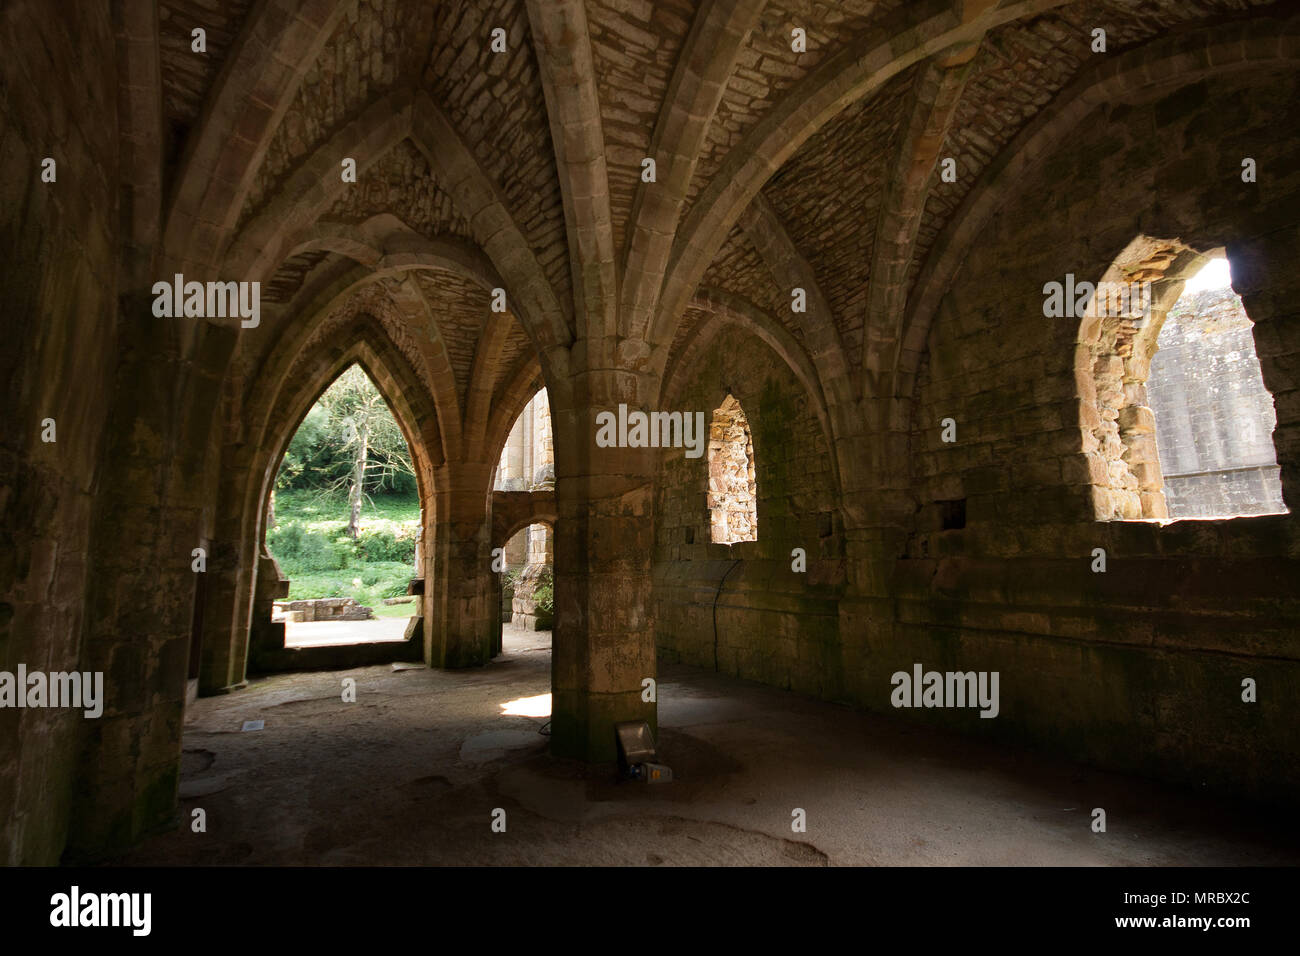 Gotische Architektur im Inneren des Klosters Ruinen von Fountains Abbey, Ripon, Großbritannien Stockfoto